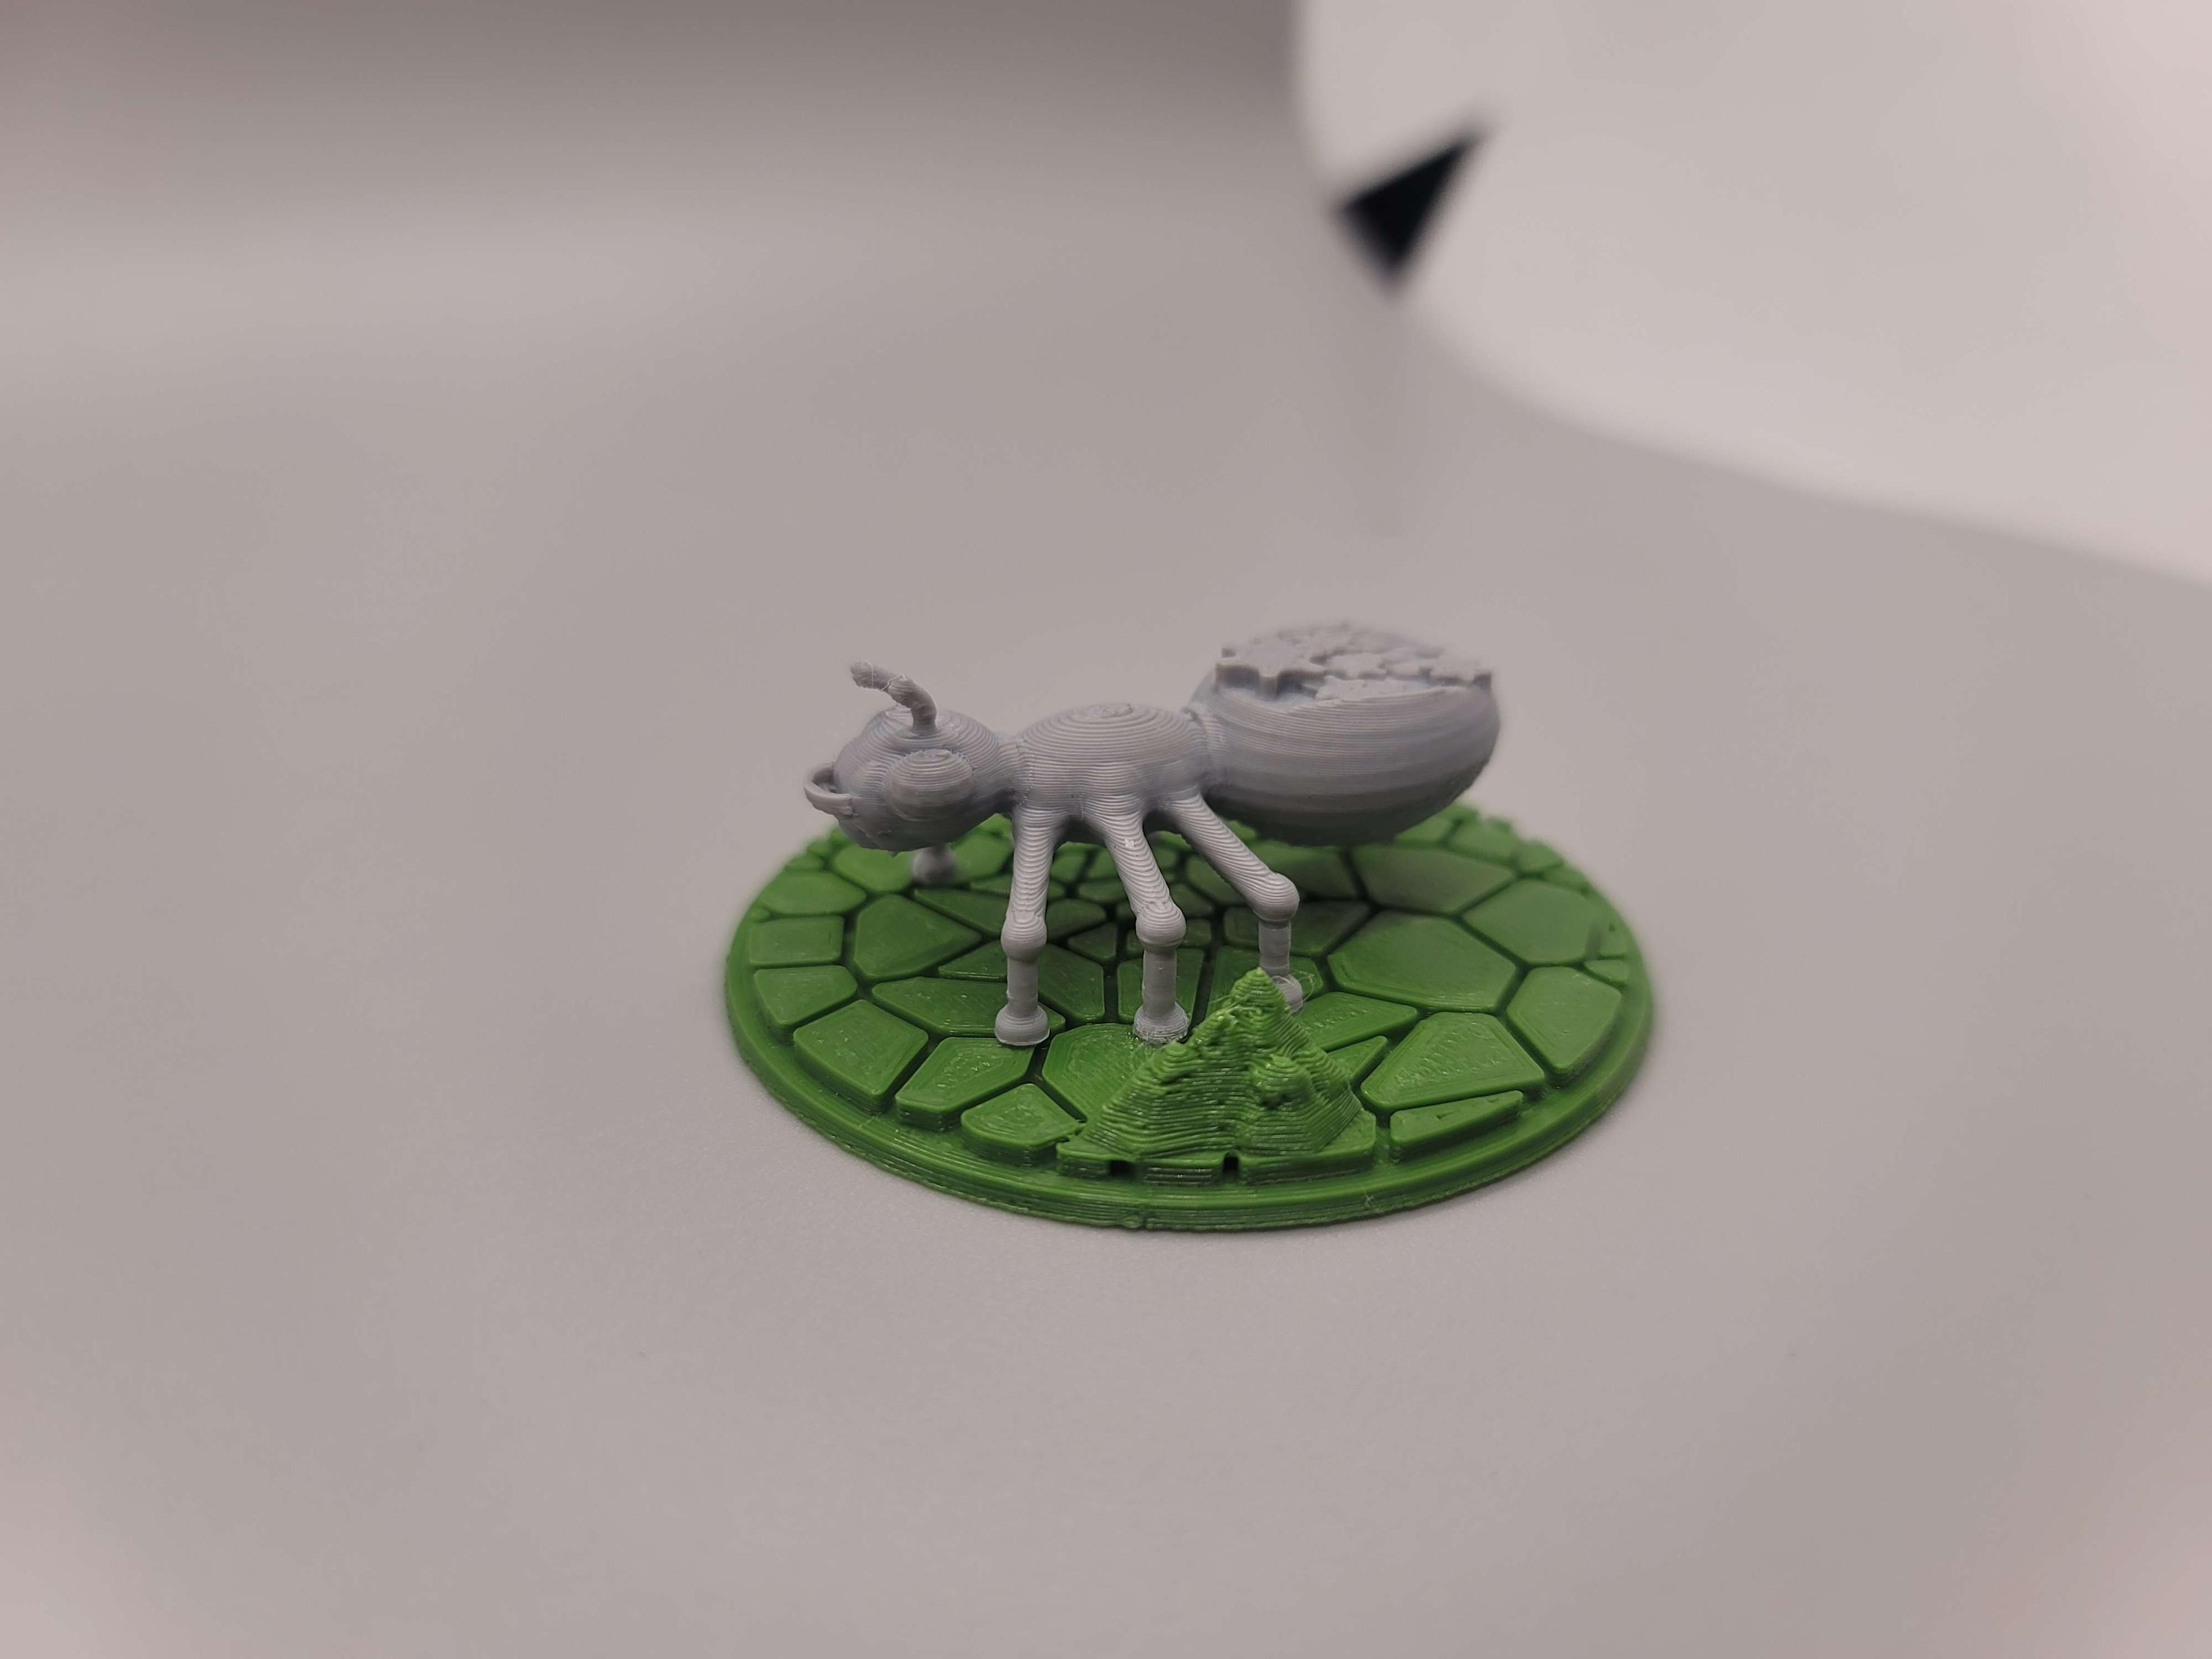 FHW Mech-ant bot 3d model